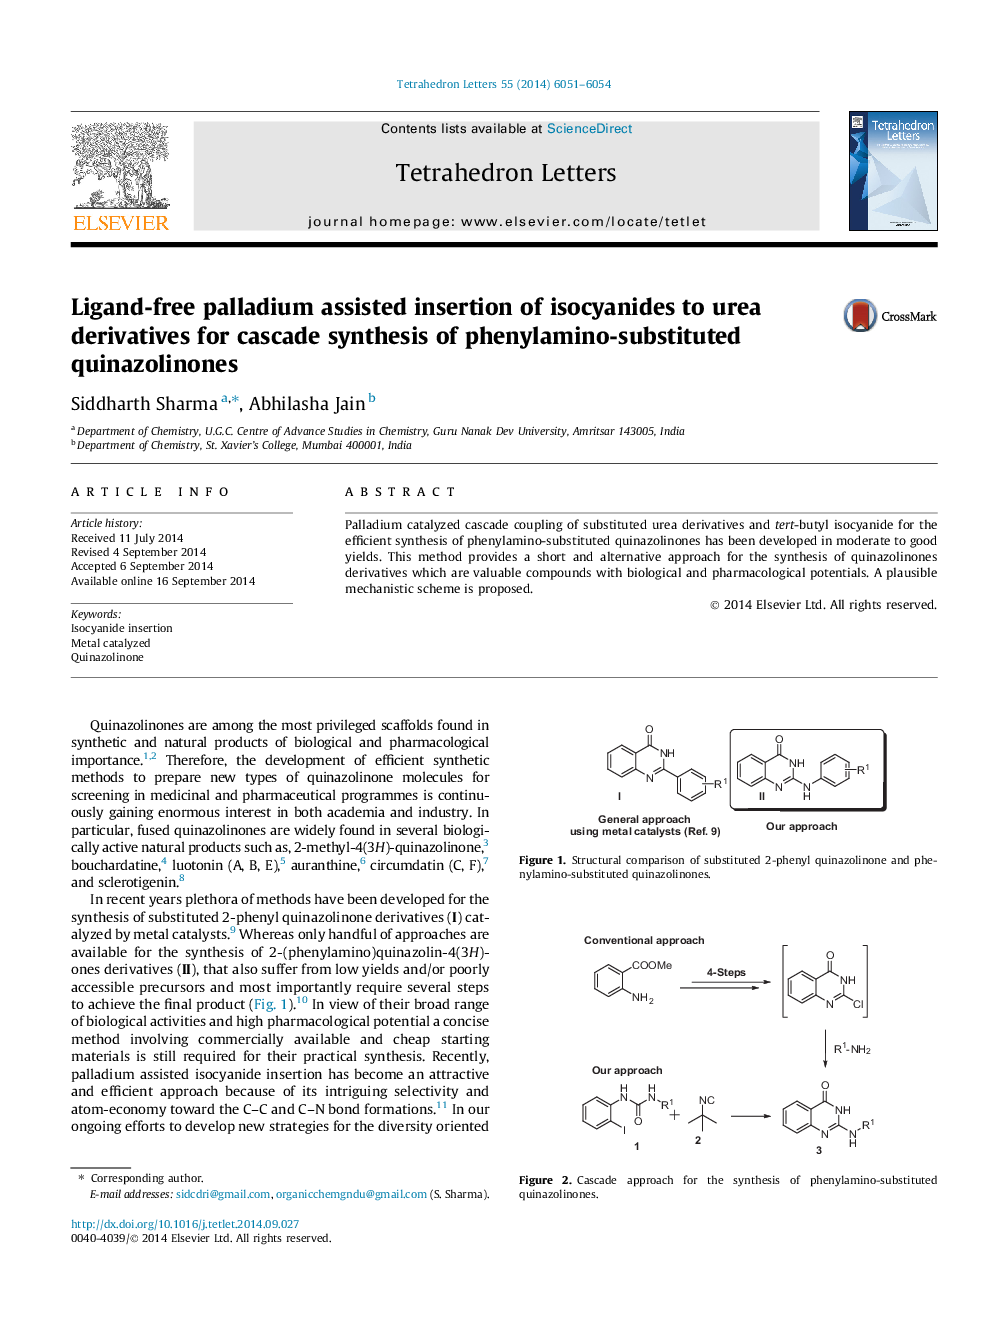 پالادیوم بدون نیاز به لیگاند از وارد کردن ایزوسیانید ها به مشتقات اوره برای سنتز آبشاری فینامین آمینو کینازولینون 